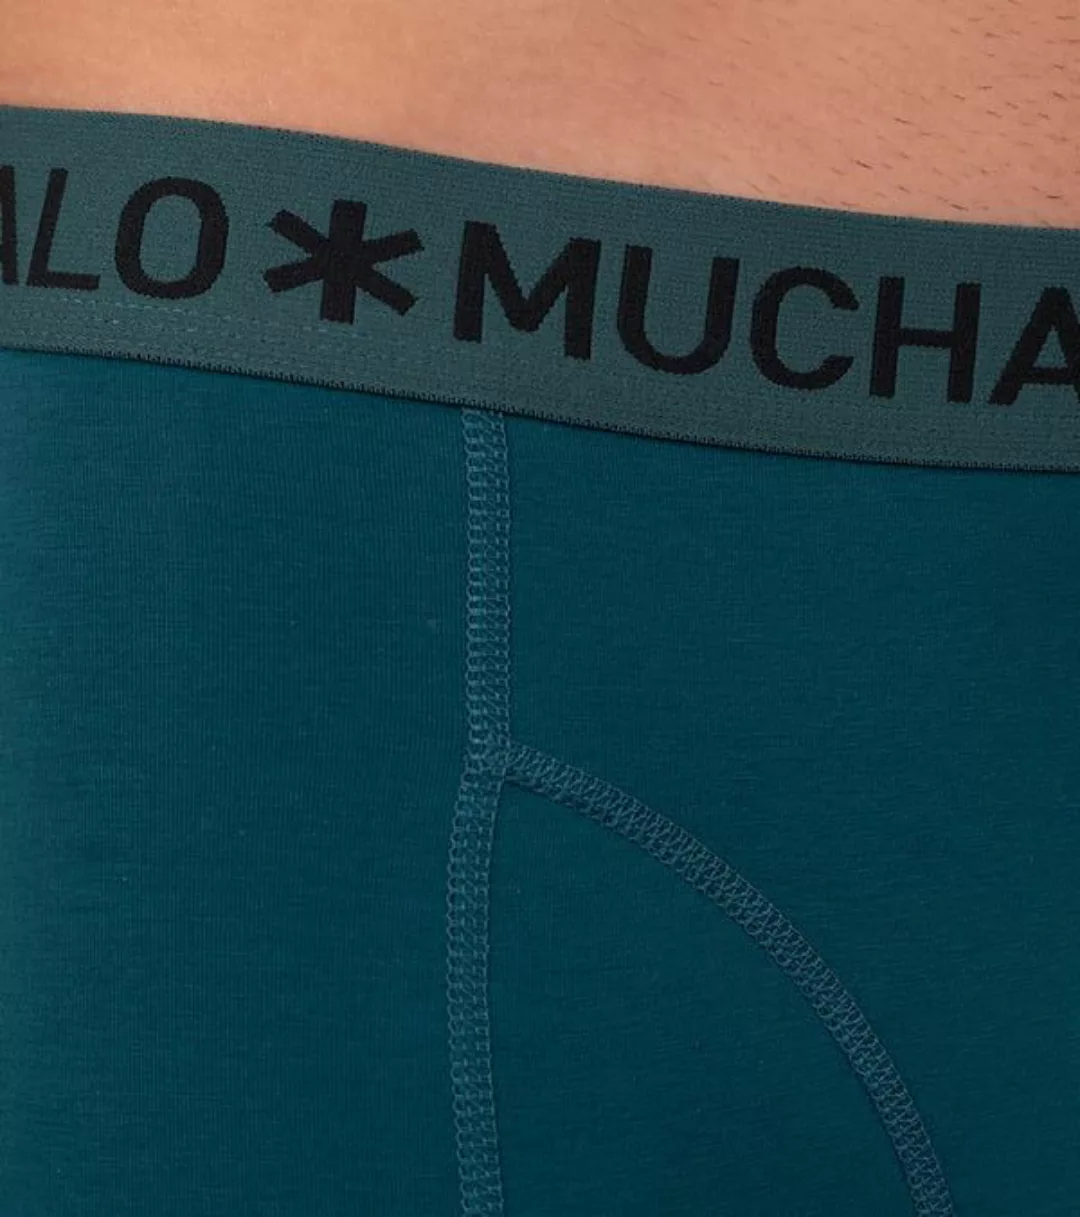 Muchachomalo Shorts 3er-Pack Solid Grün Blau 580 - Größe S günstig online kaufen